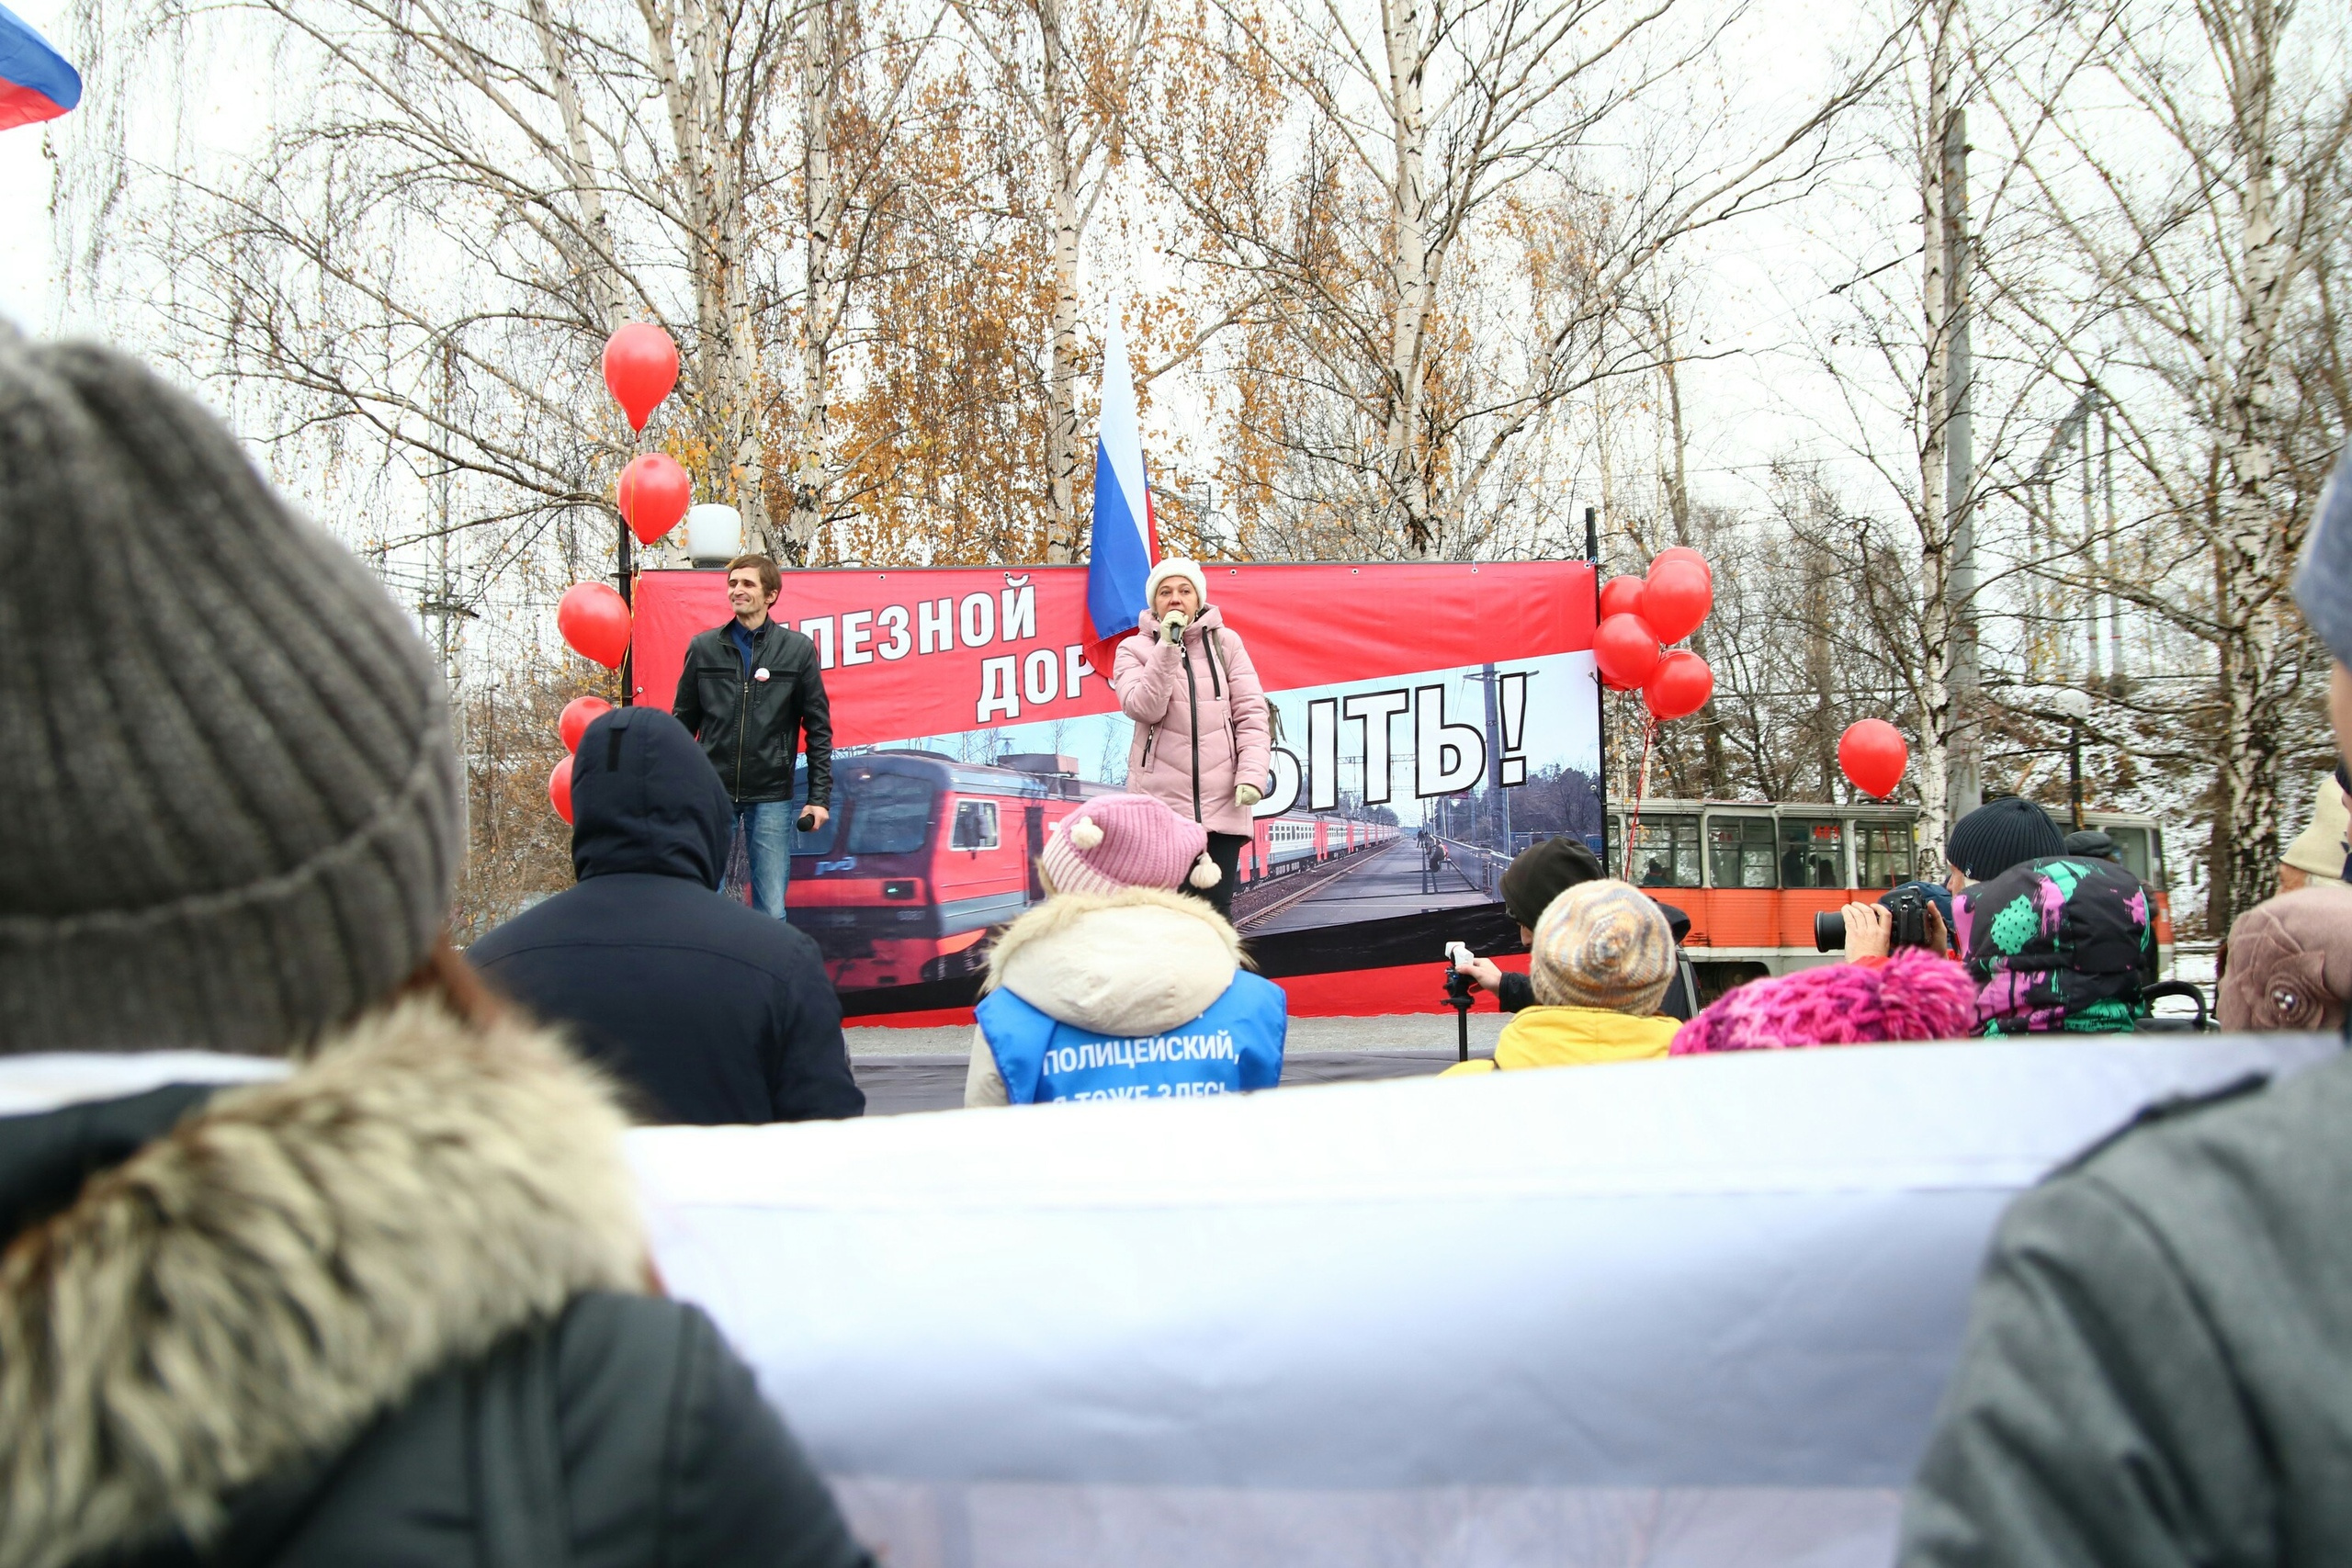 Анастасия Мальцева специально приехала на митинг на автомобиле — чтобы посмотреть, сколько займет дорога от Молодежной